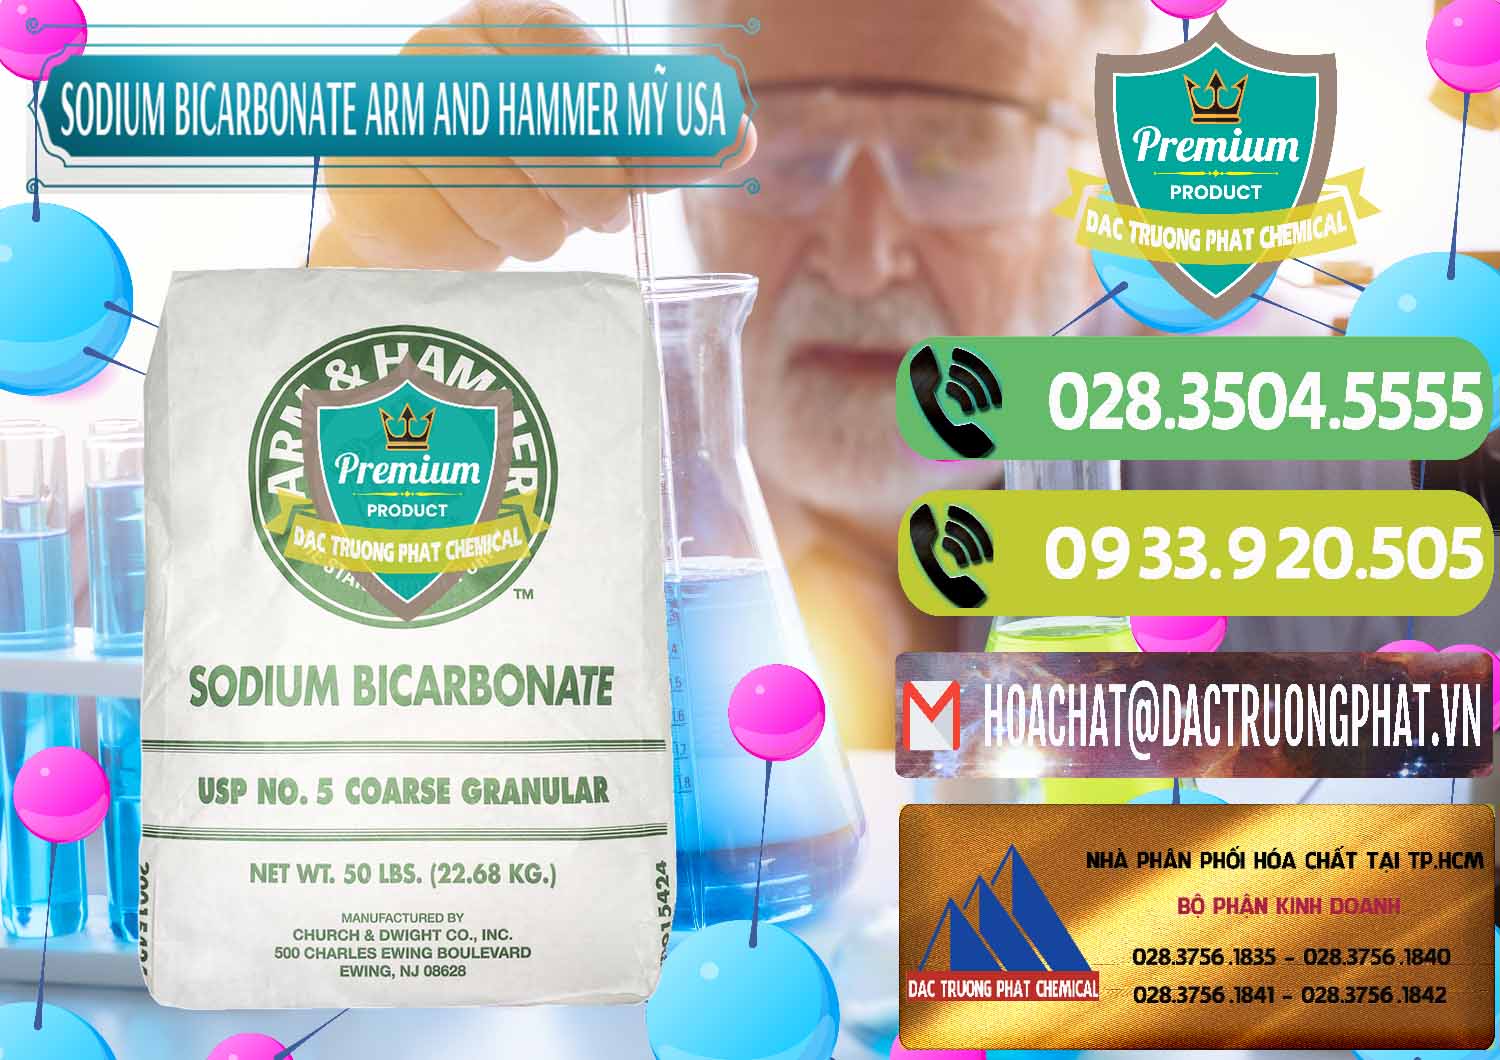 Chuyên cung cấp và bán Sodium Bicarbonate – Bicar NaHCO3 Food Grade Arm And Hammer Mỹ USA - 0255 - Nơi phân phối & cung cấp hóa chất tại TP.HCM - hoachatmientay.vn